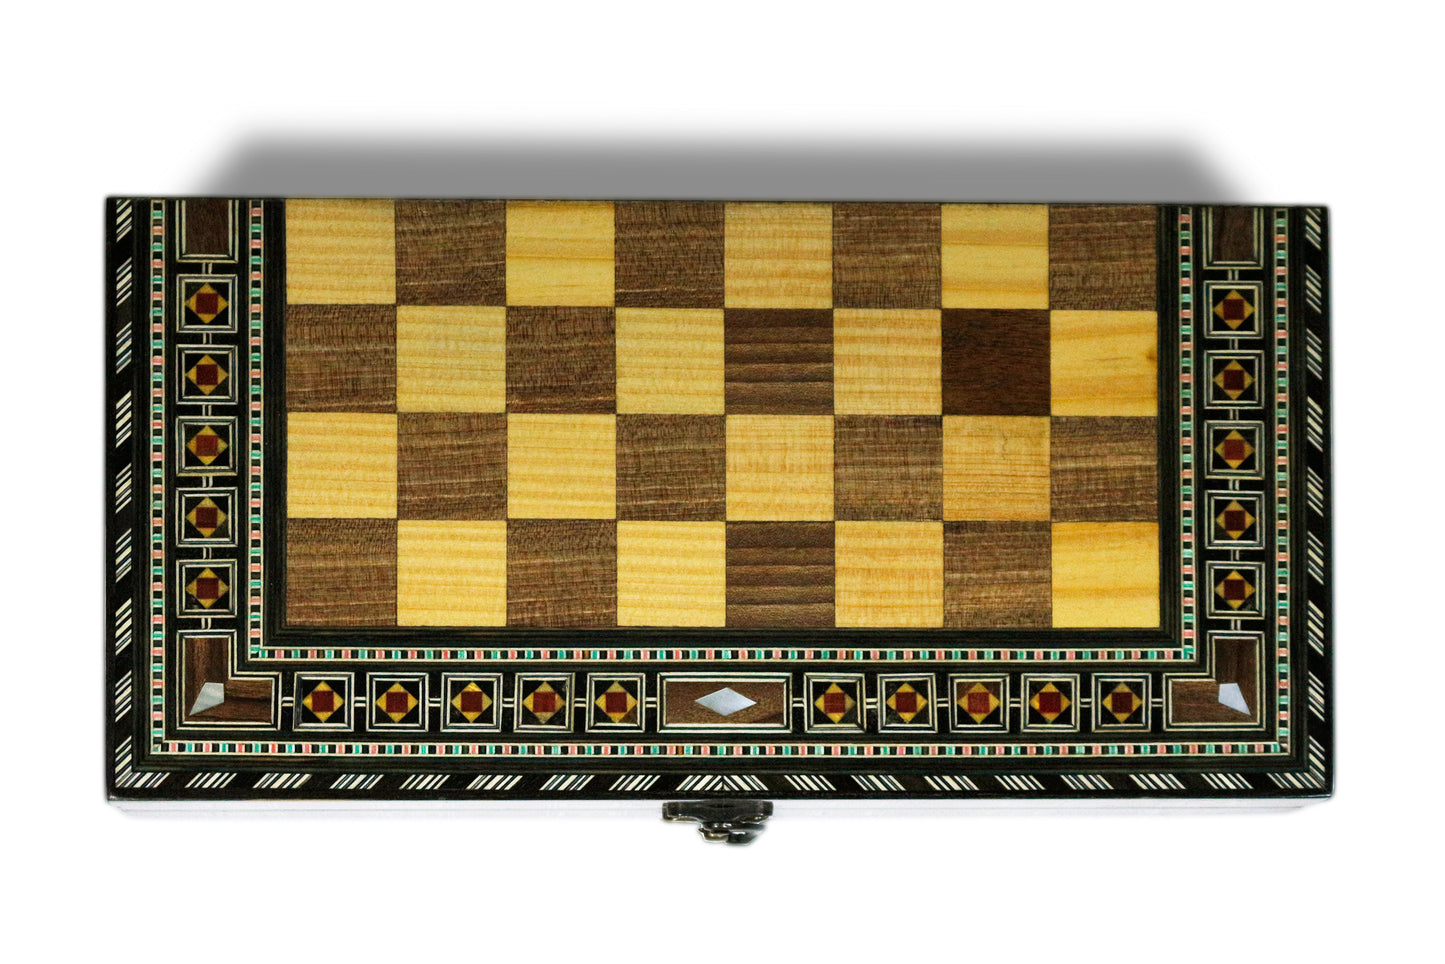 Holz Backgammon/Schach Brett inkl.Steine,Schachfiguren BC312SF